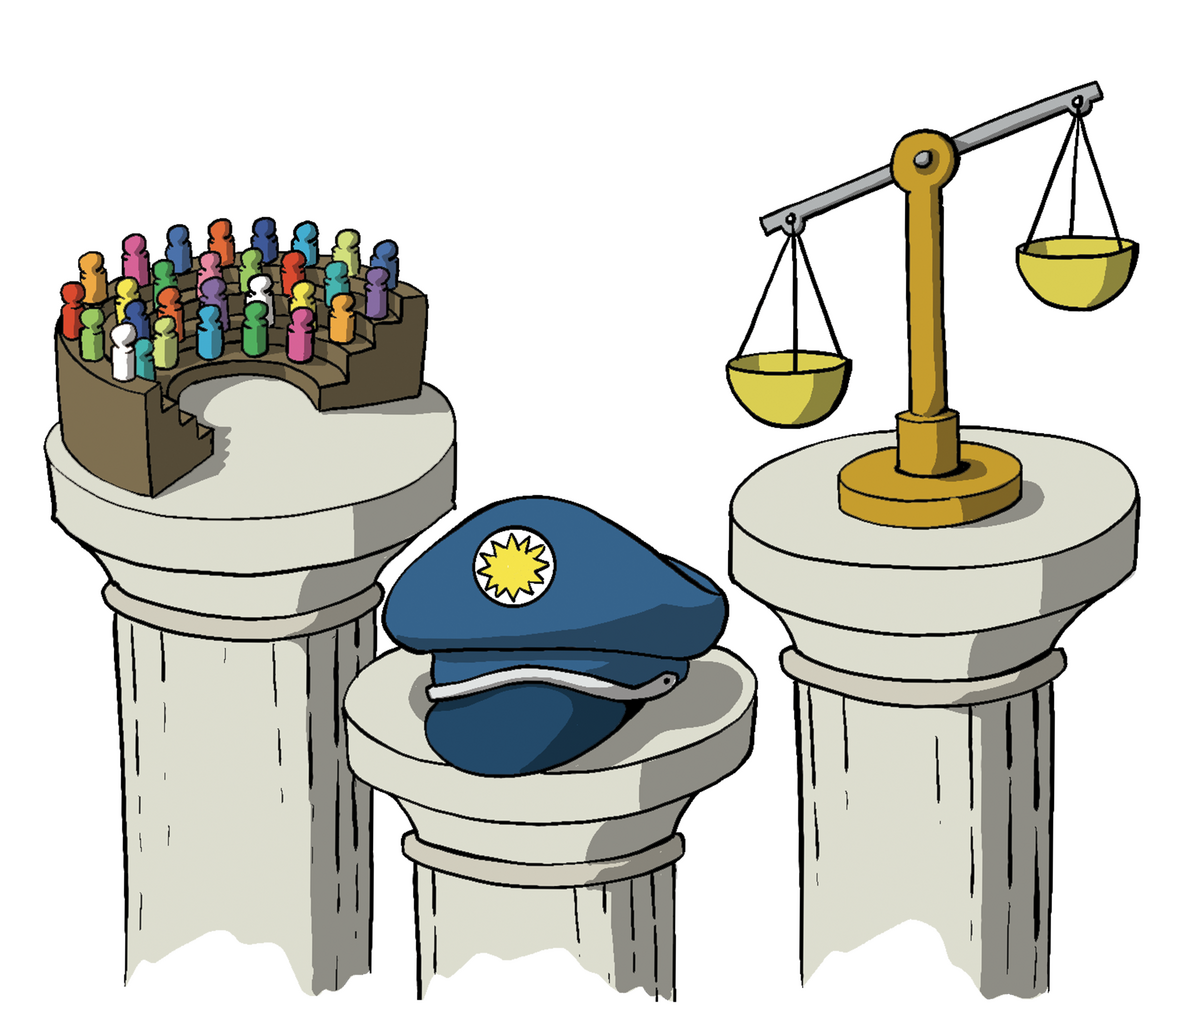 Man sieht drei Säulen mit einem Parlament, einer Polizeimütze und einer Waage, die die Justiz repräsentiert.